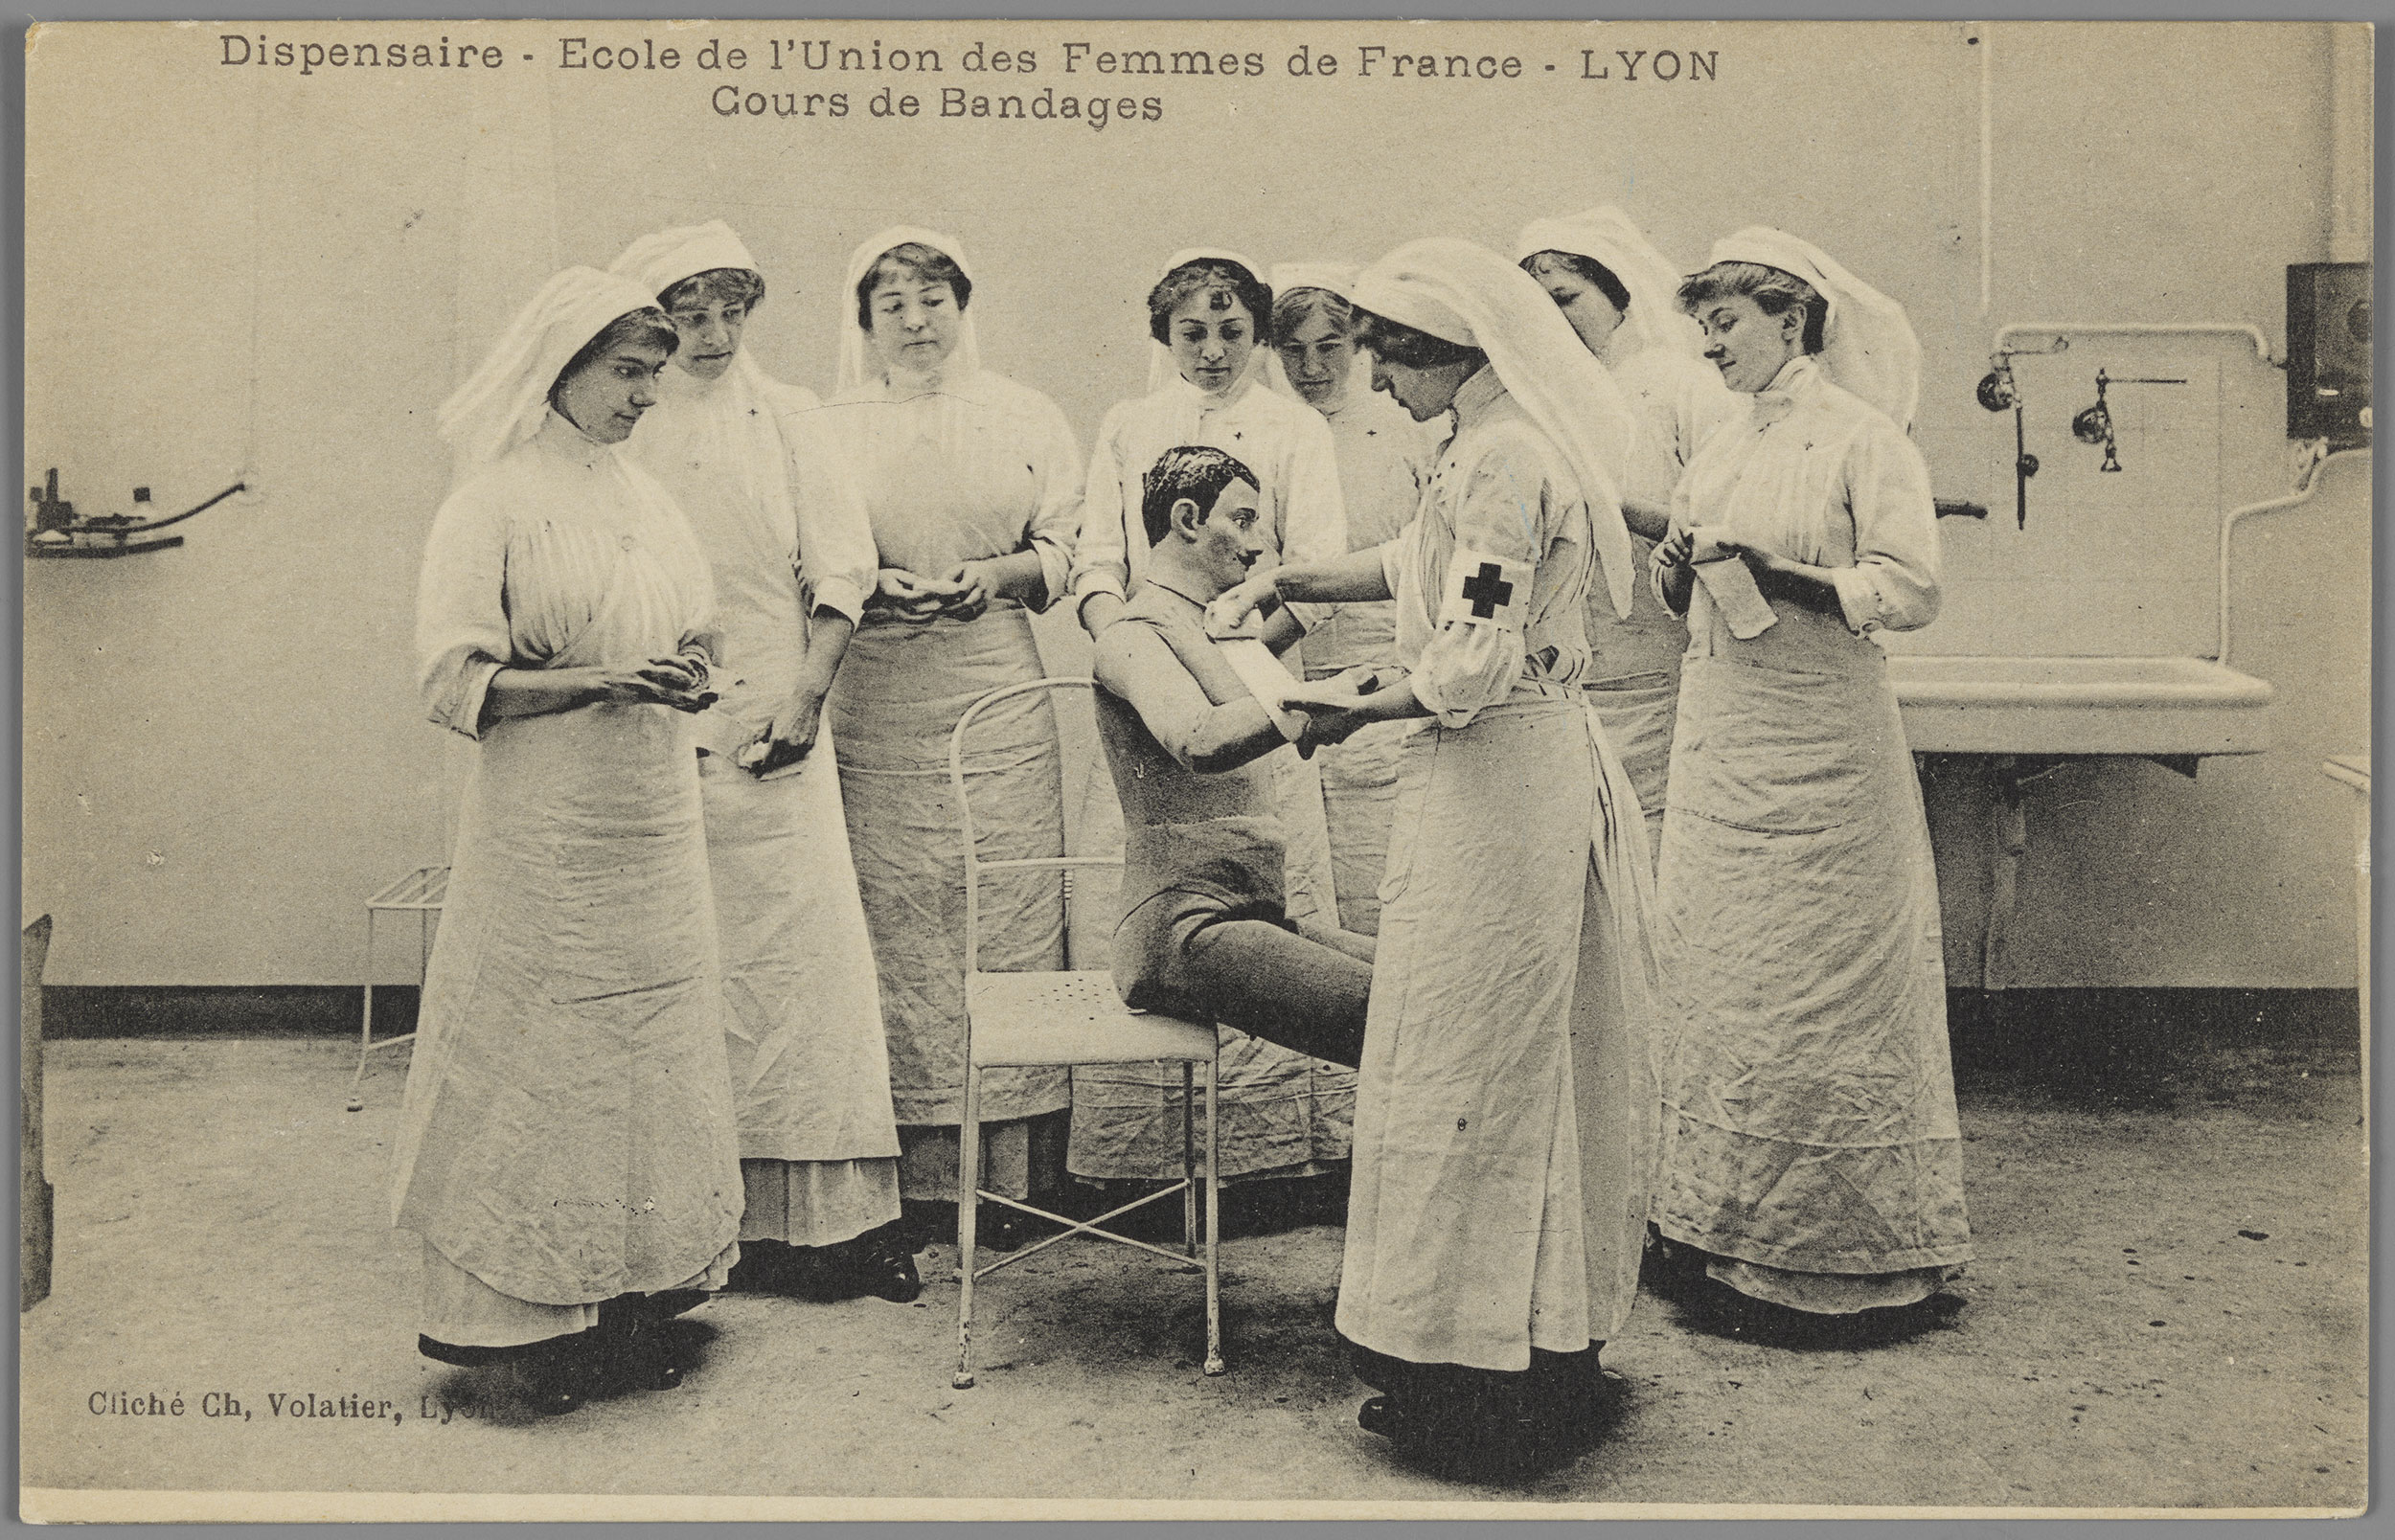 Dispensaire - Ecole de l'union des femmes de France, Lyon. Cours de bandages : carte postale NB (vers 1914-1918, cote : 4FI/4849)